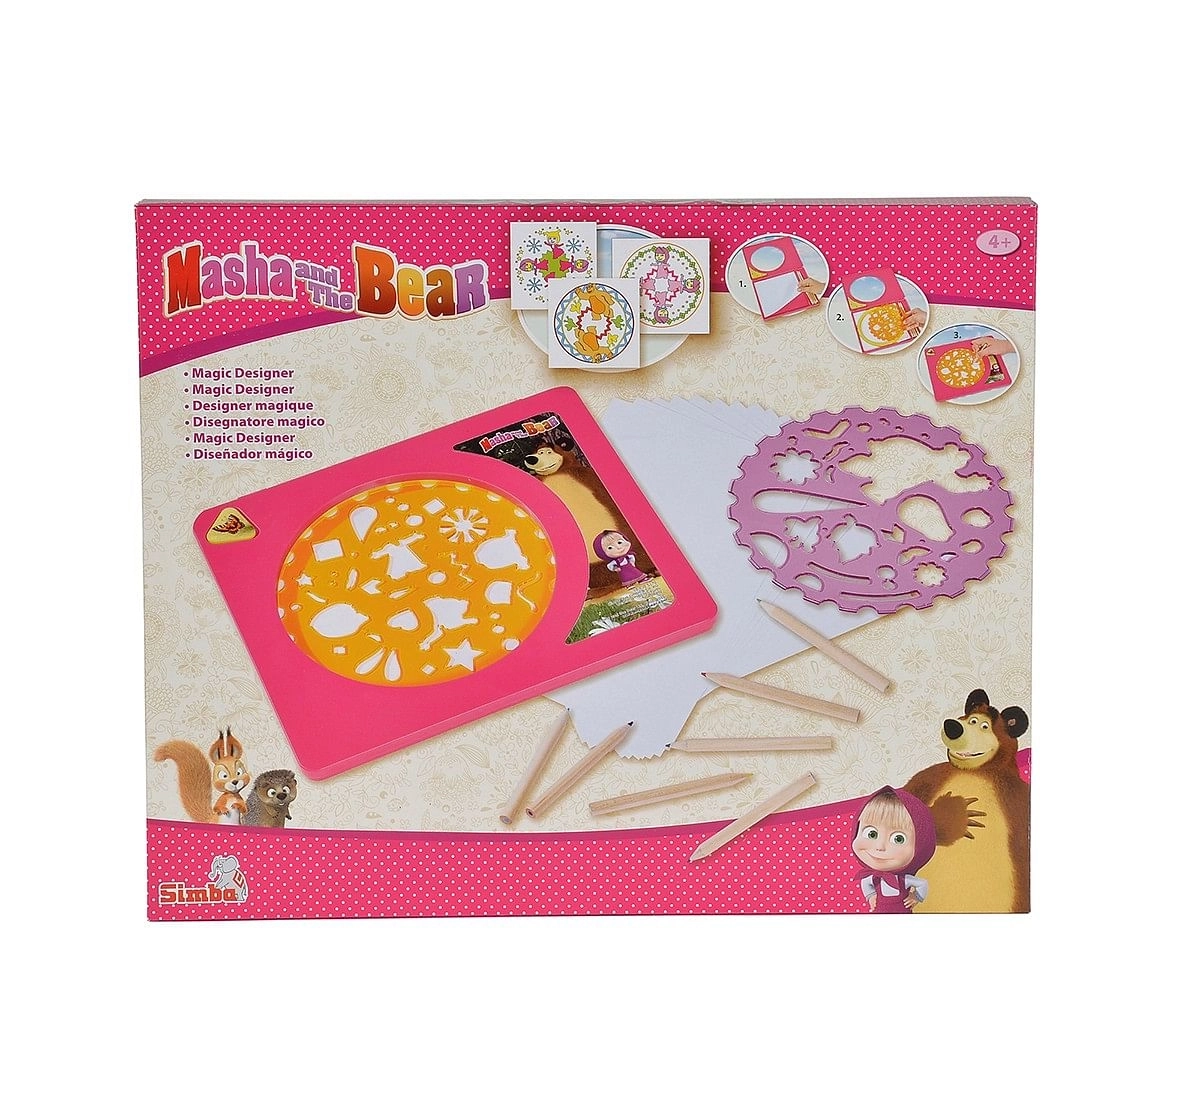 Simba - Masha Magic Designer DIY Art & Craft Kits for Kids age 4Y+ (Pink)